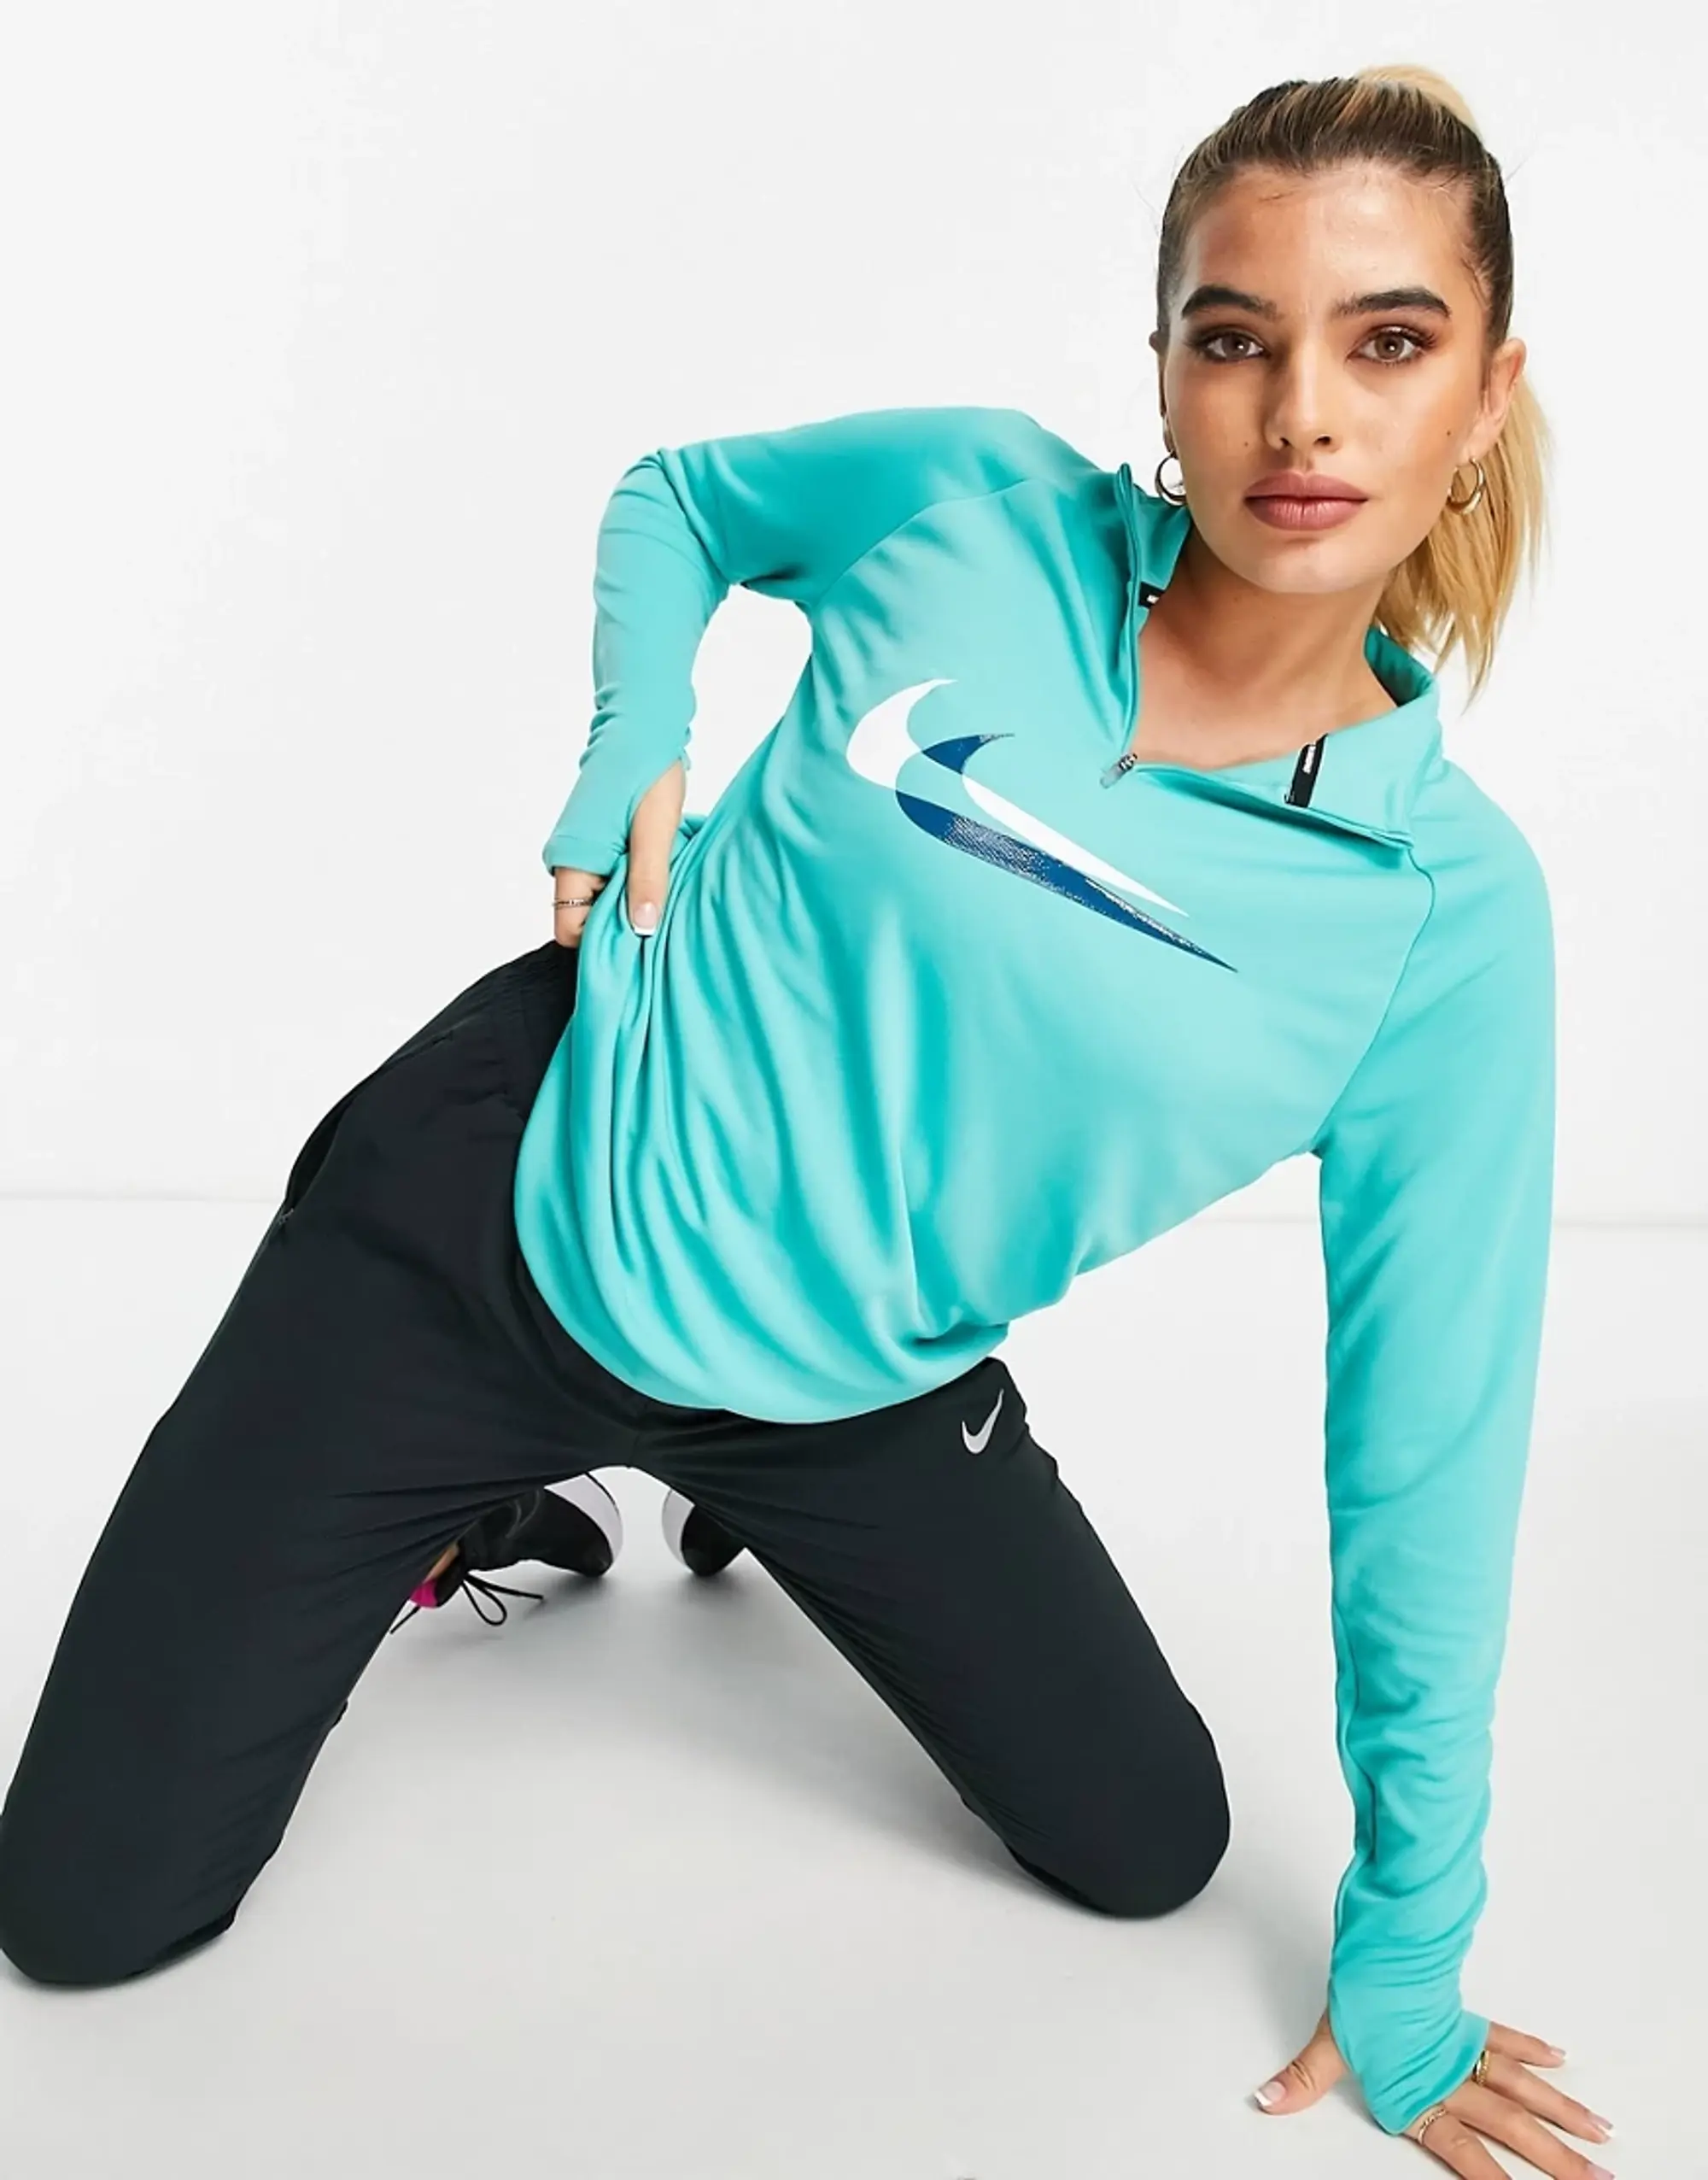 Nike Running Dri-FIT Swoosh half-zip midlayer long sleeve top in black